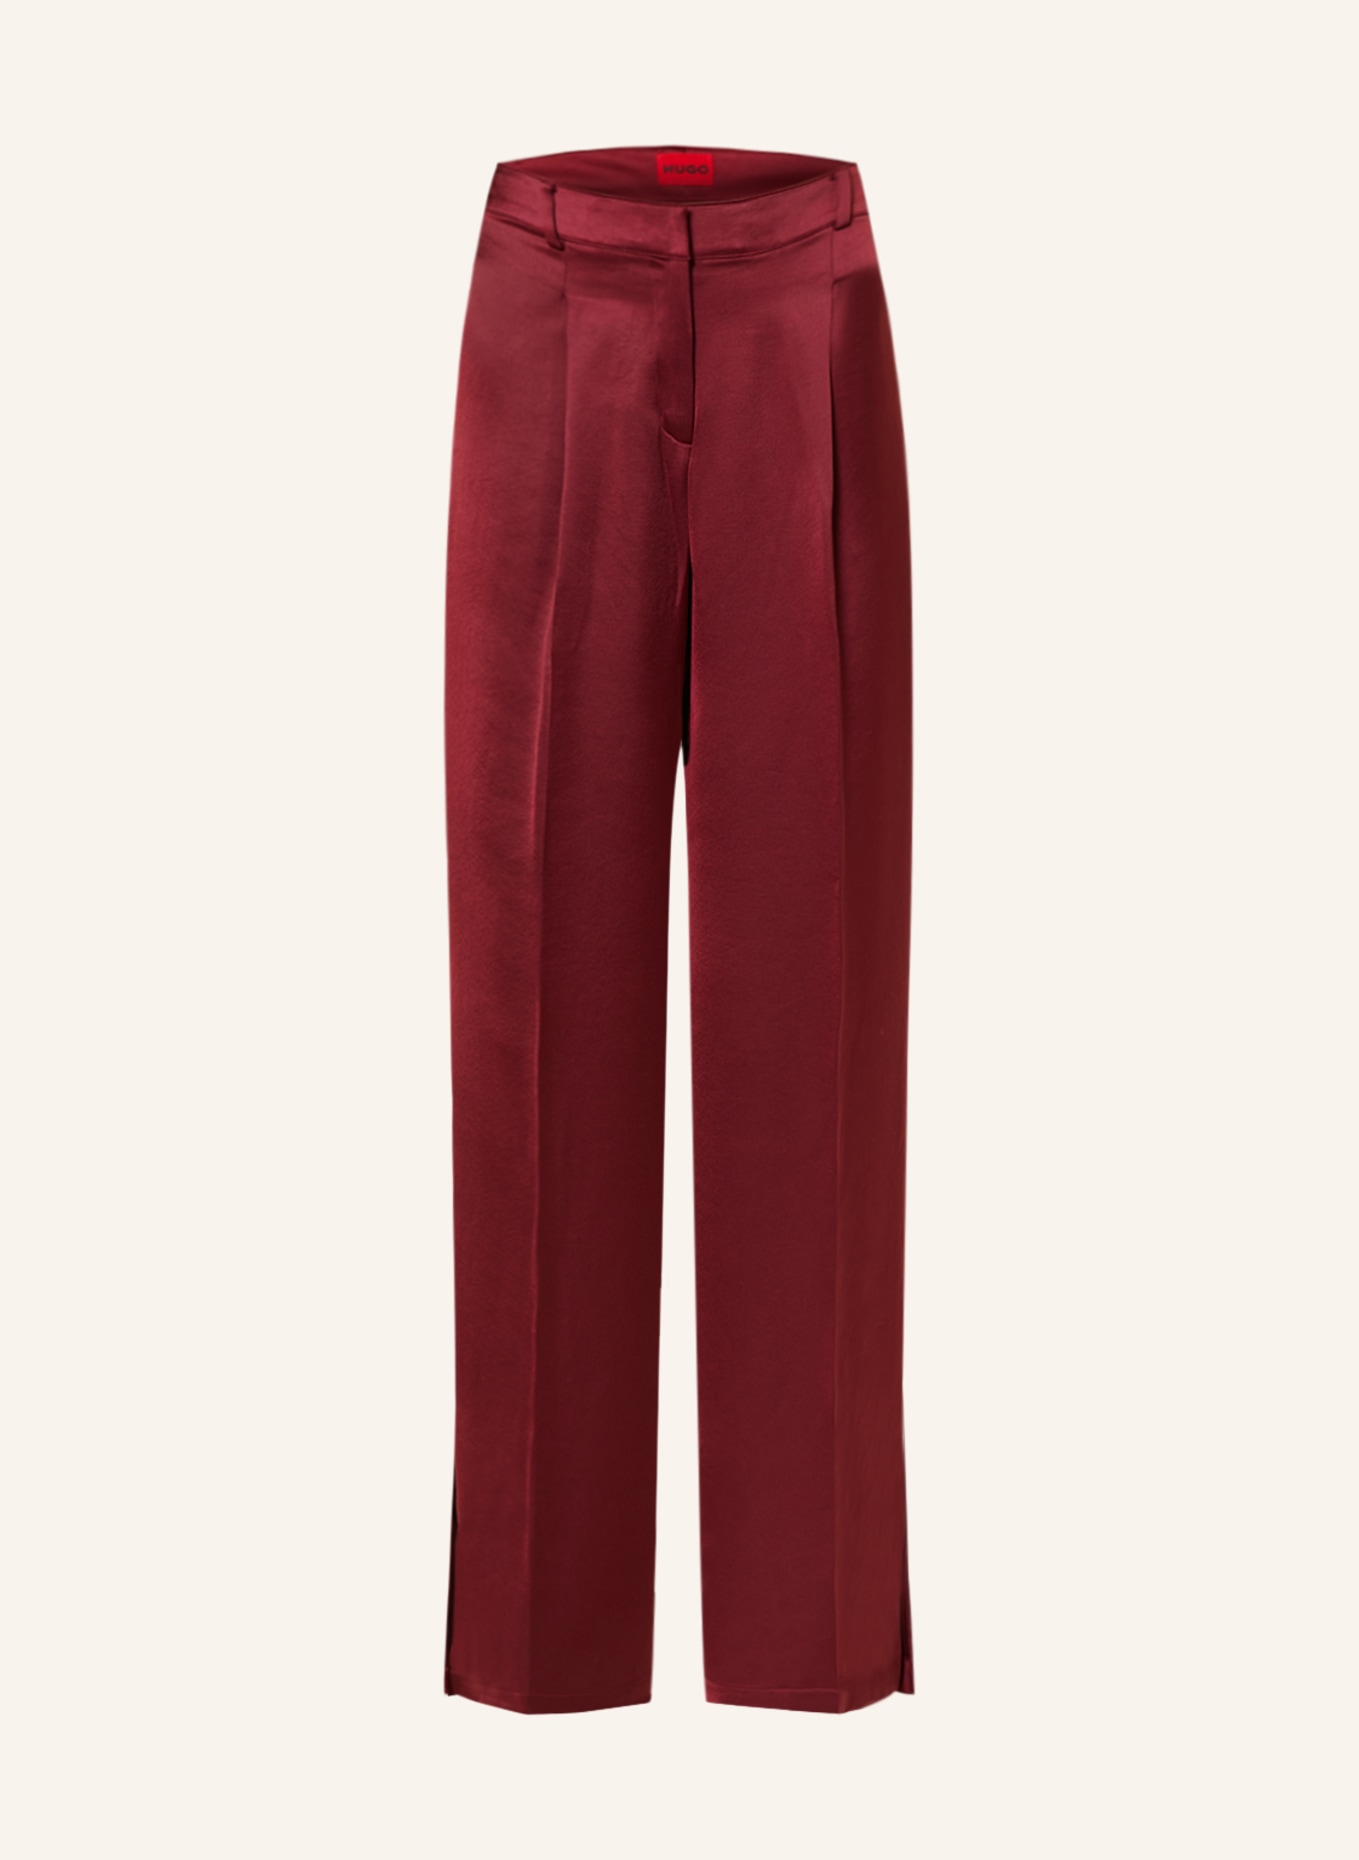 Wide-leg Satin Pants - Dark red - Ladies